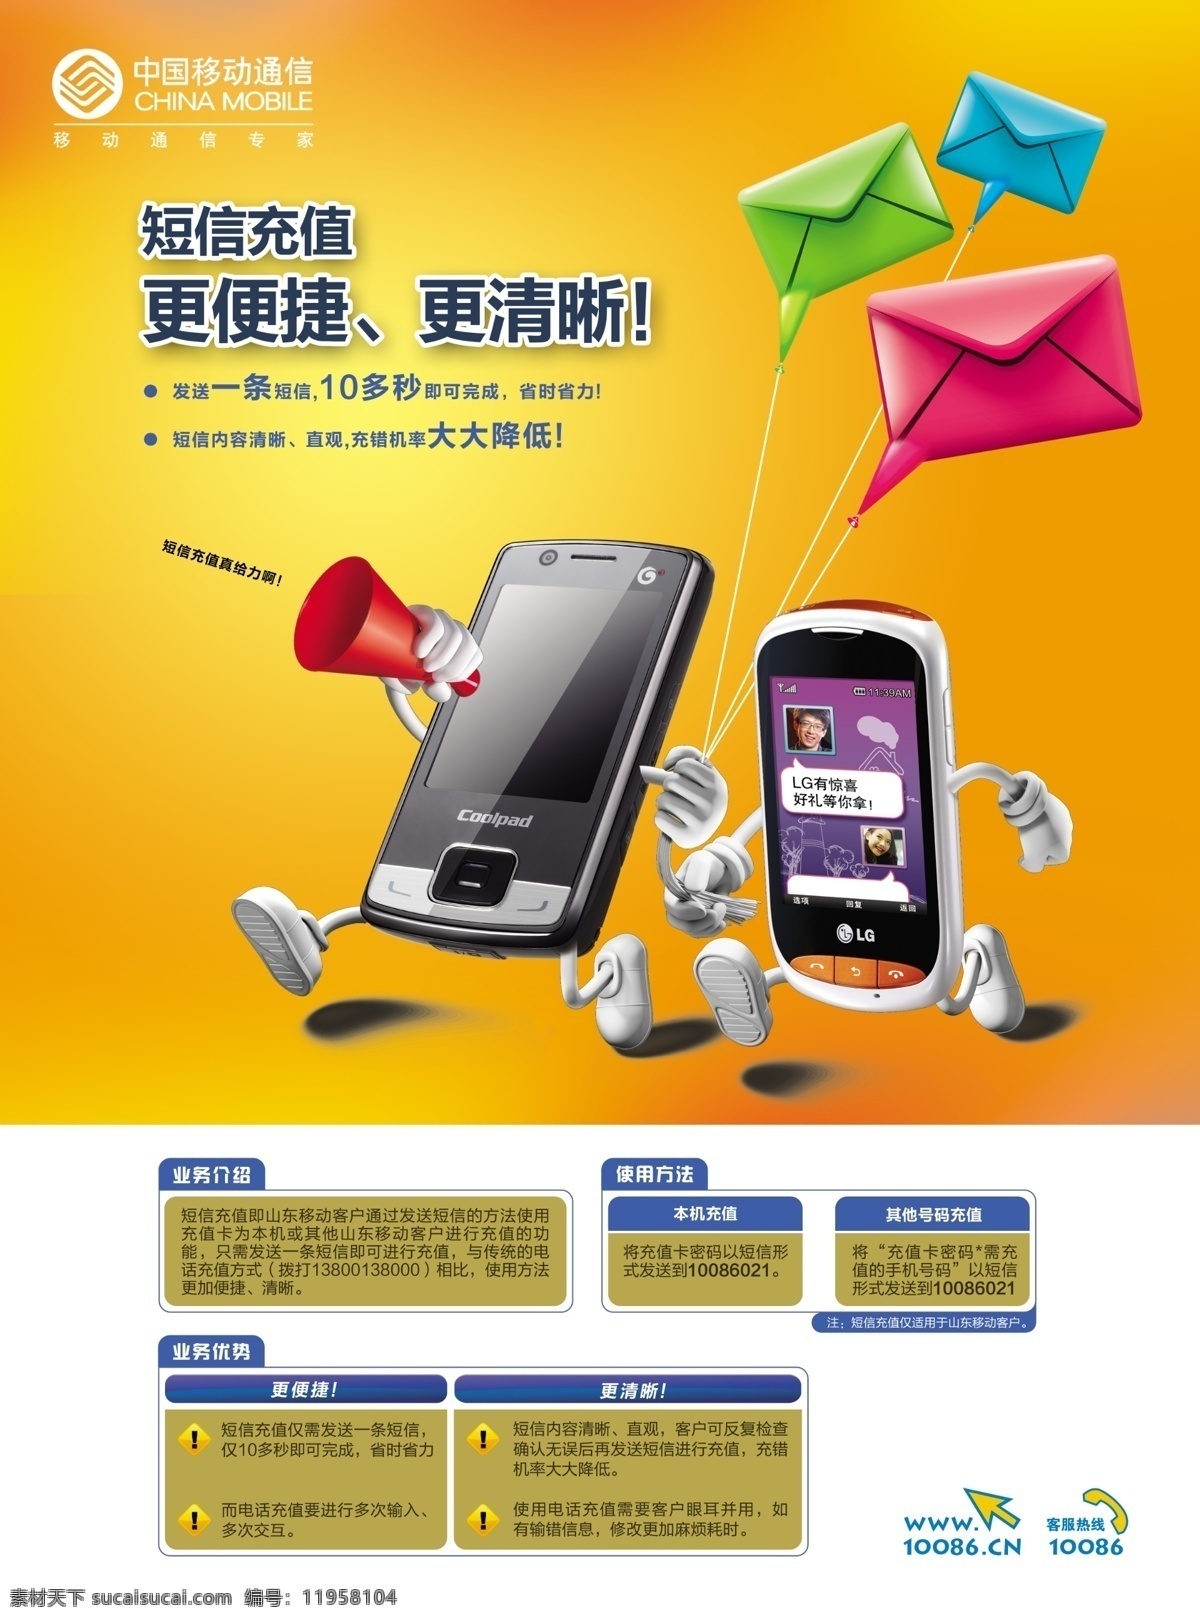 中国移动 海报 短信 广告设计模板 牵手 信封 源文件 中国移动海报 奔跑的手机 矢量图 其他矢量图